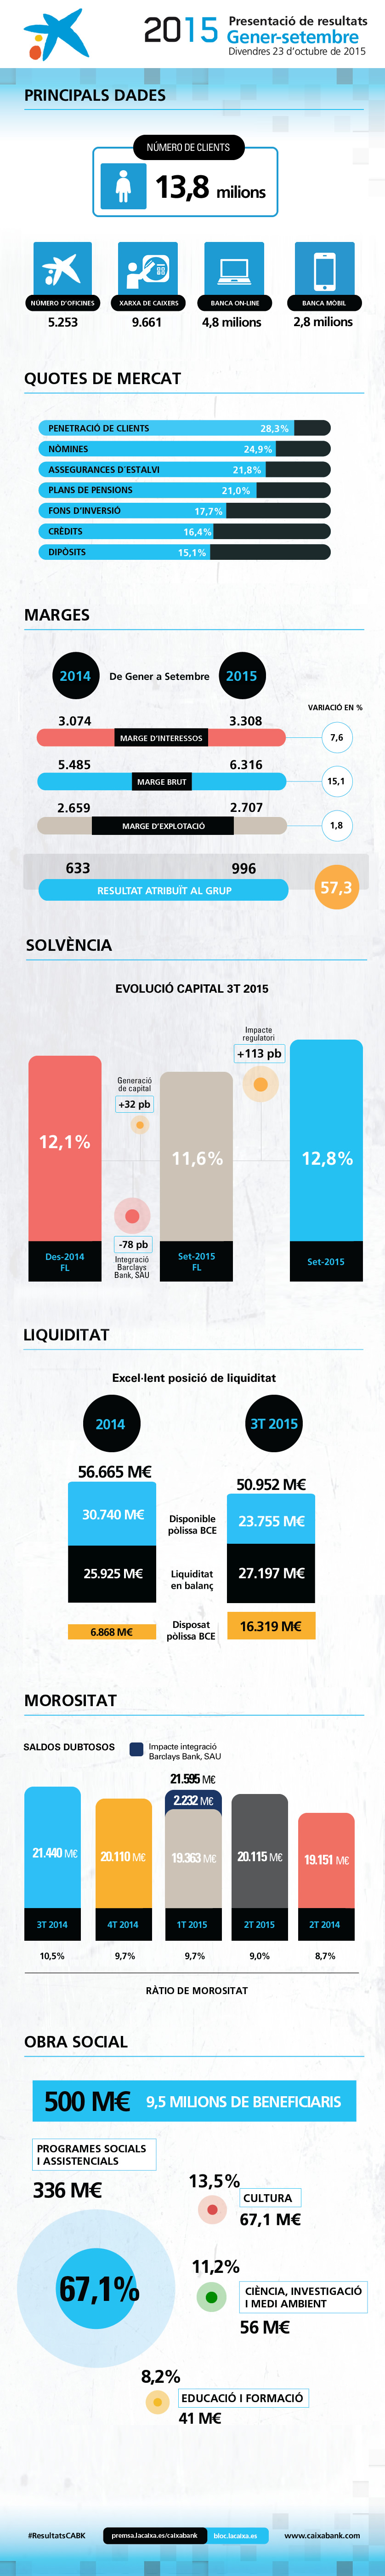 Resultats de CaixaBank 9M2015 - infografia